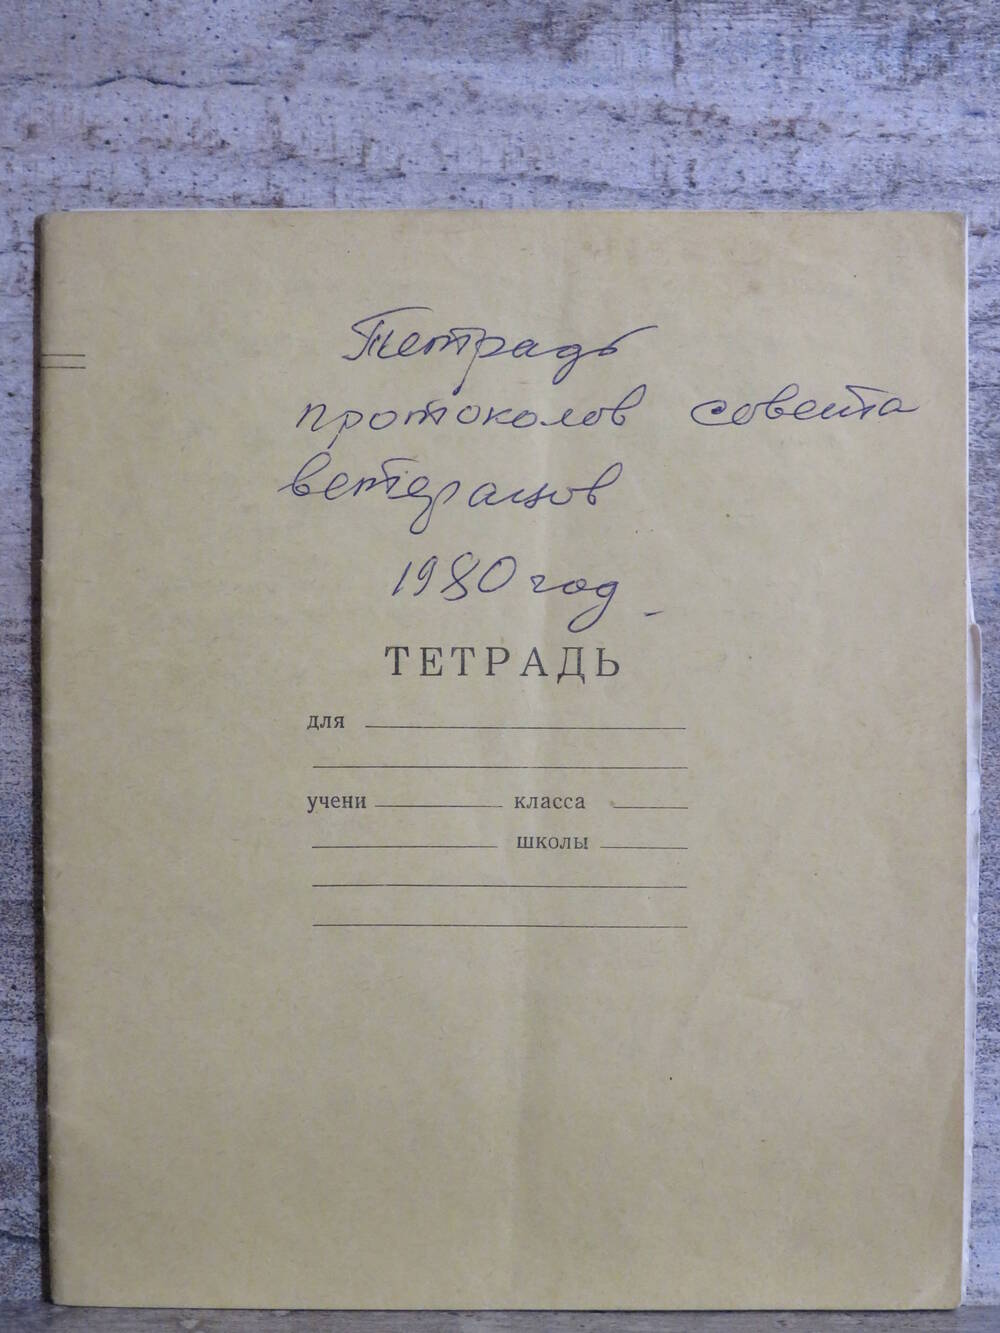 Тетрадь протоколов совета ветеранов 1980г.